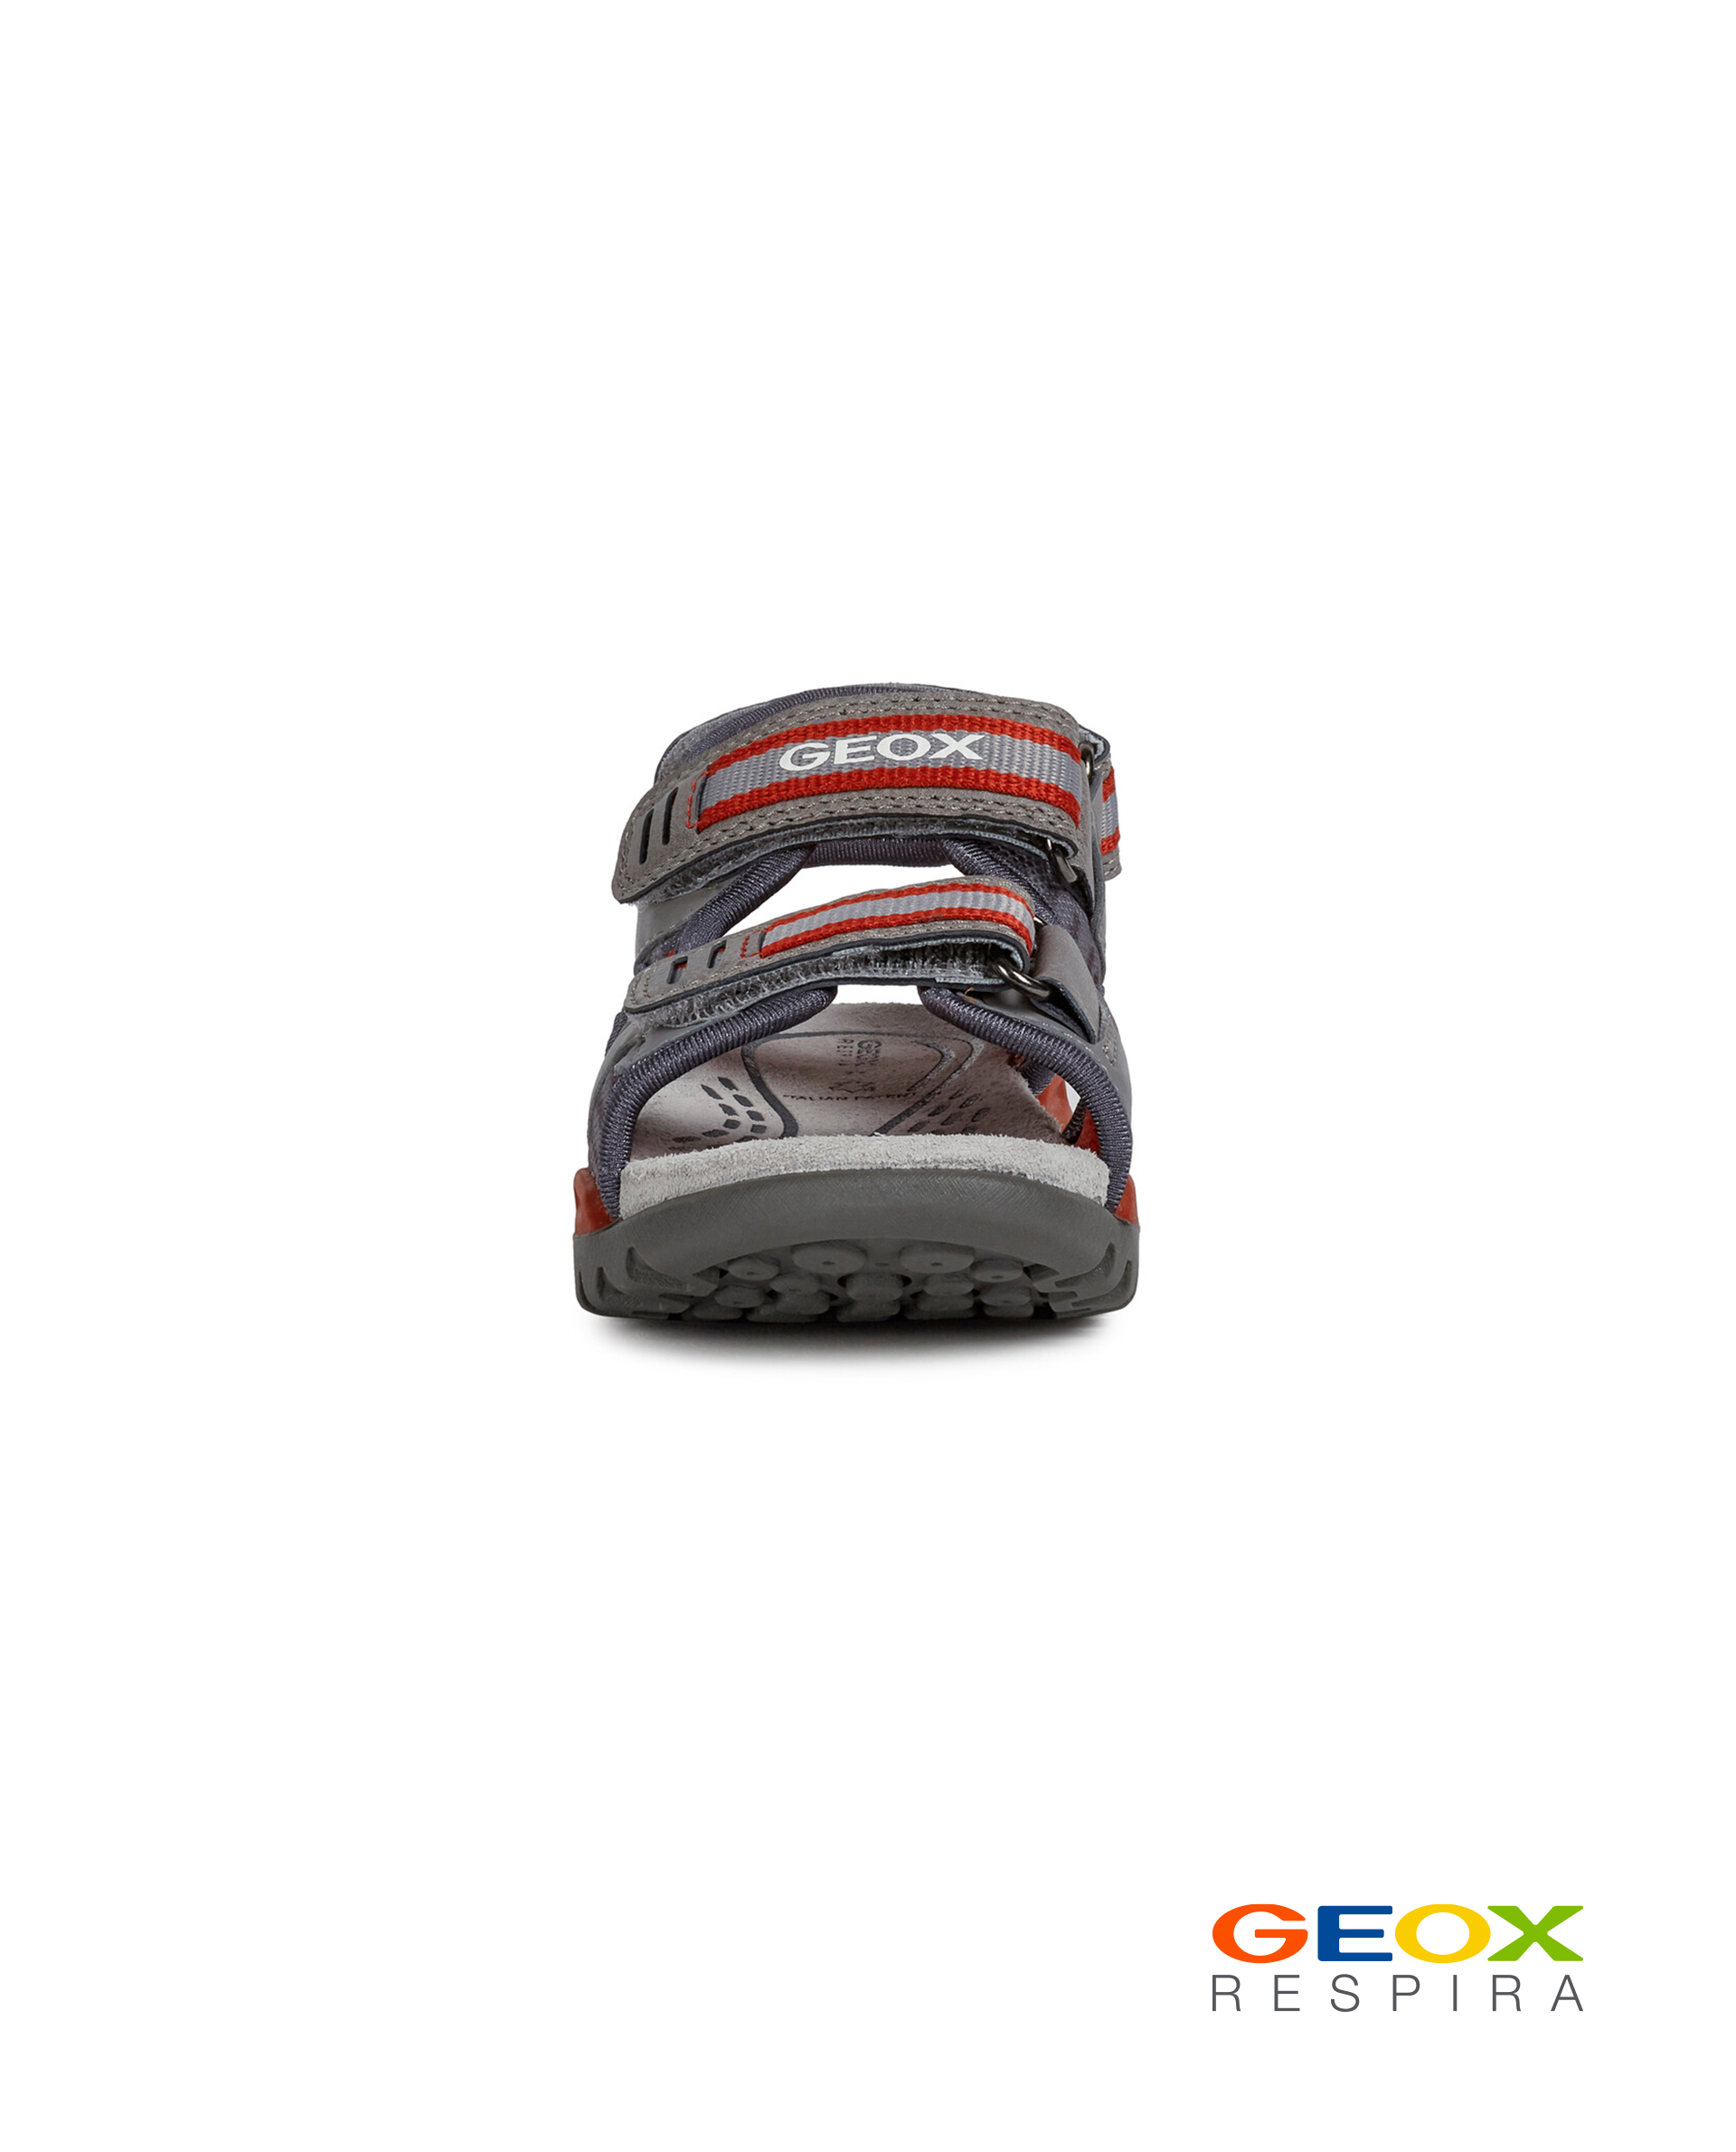 Серые сандалии Geox для мальчика J020RD014MEC0051, размер 32, цвет серый - фото 2